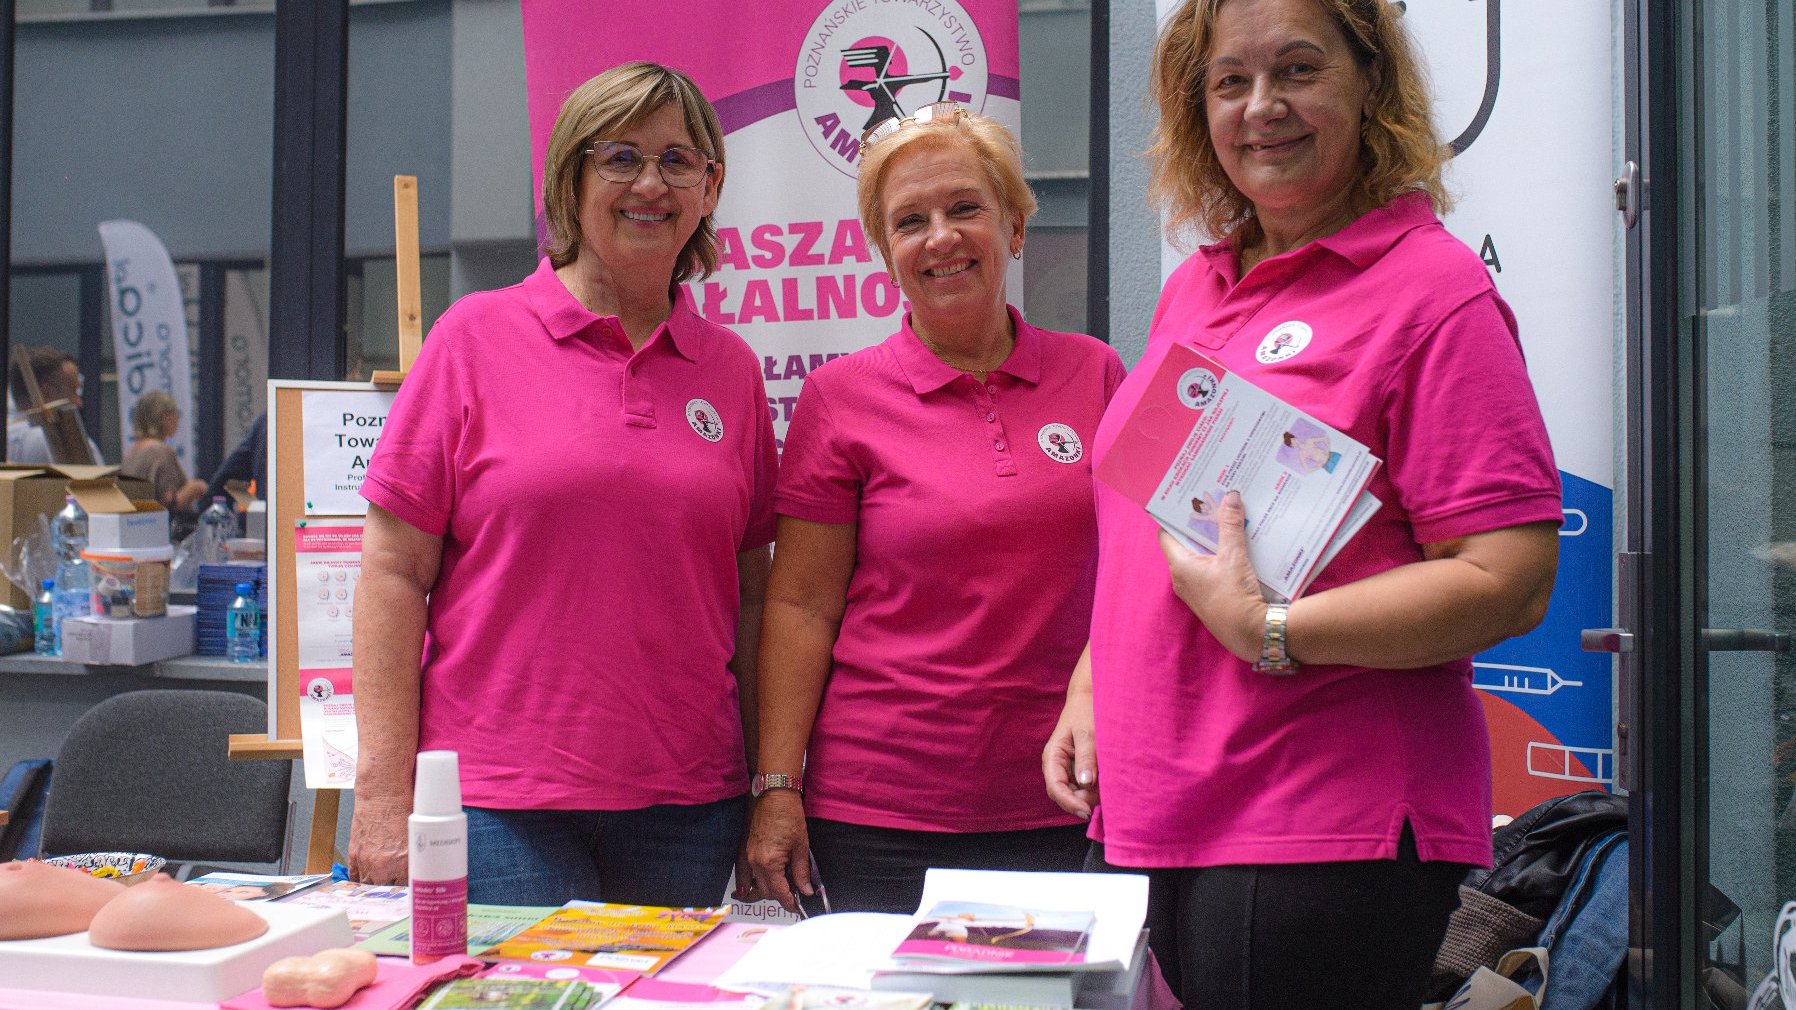 Na zdjęciu trzy kobiety w różowych koszulkach uśmiechają się do obiektywu